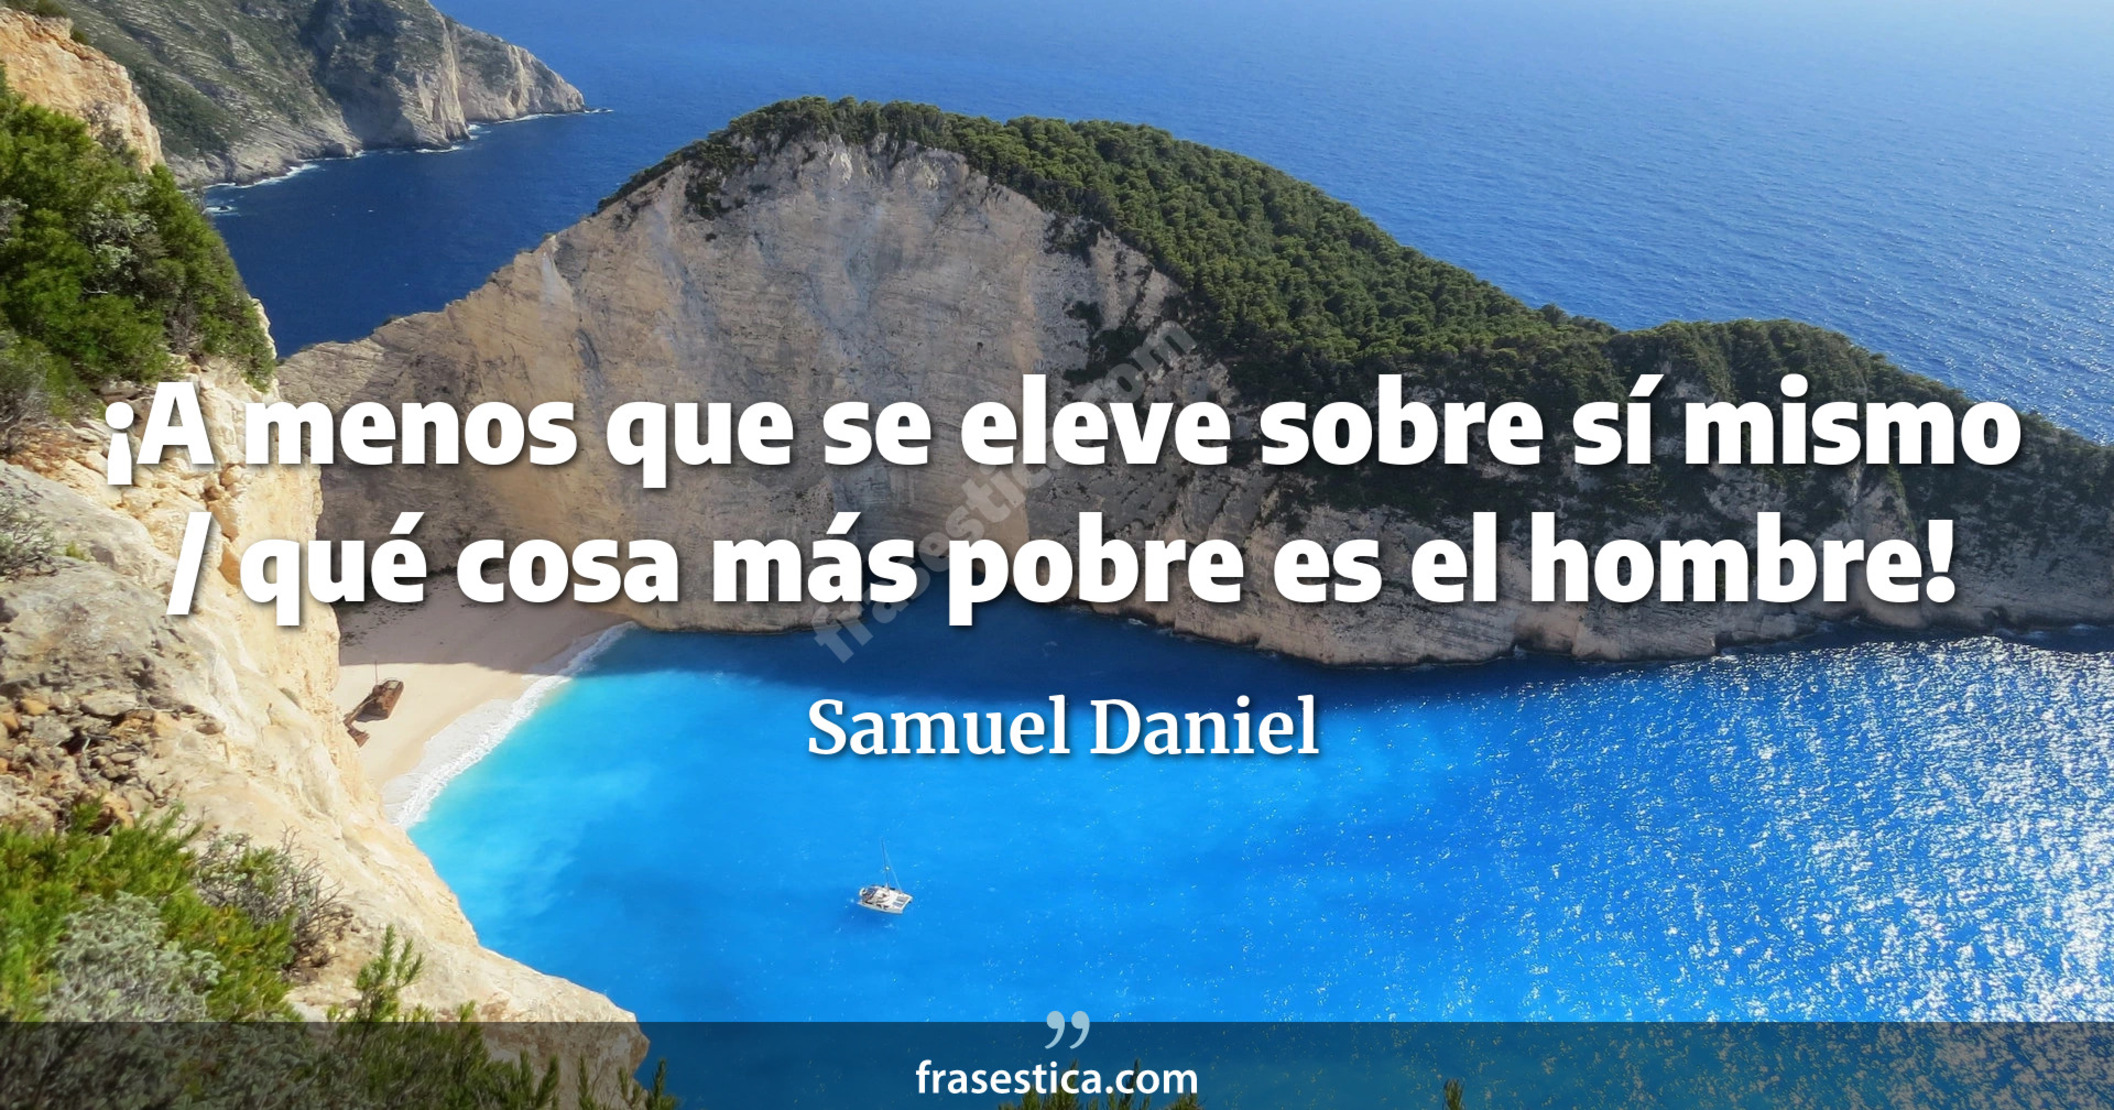 ¡A menos que se eleve sobre sí mismo / qué cosa más pobre es el hombre! - Samuel Daniel